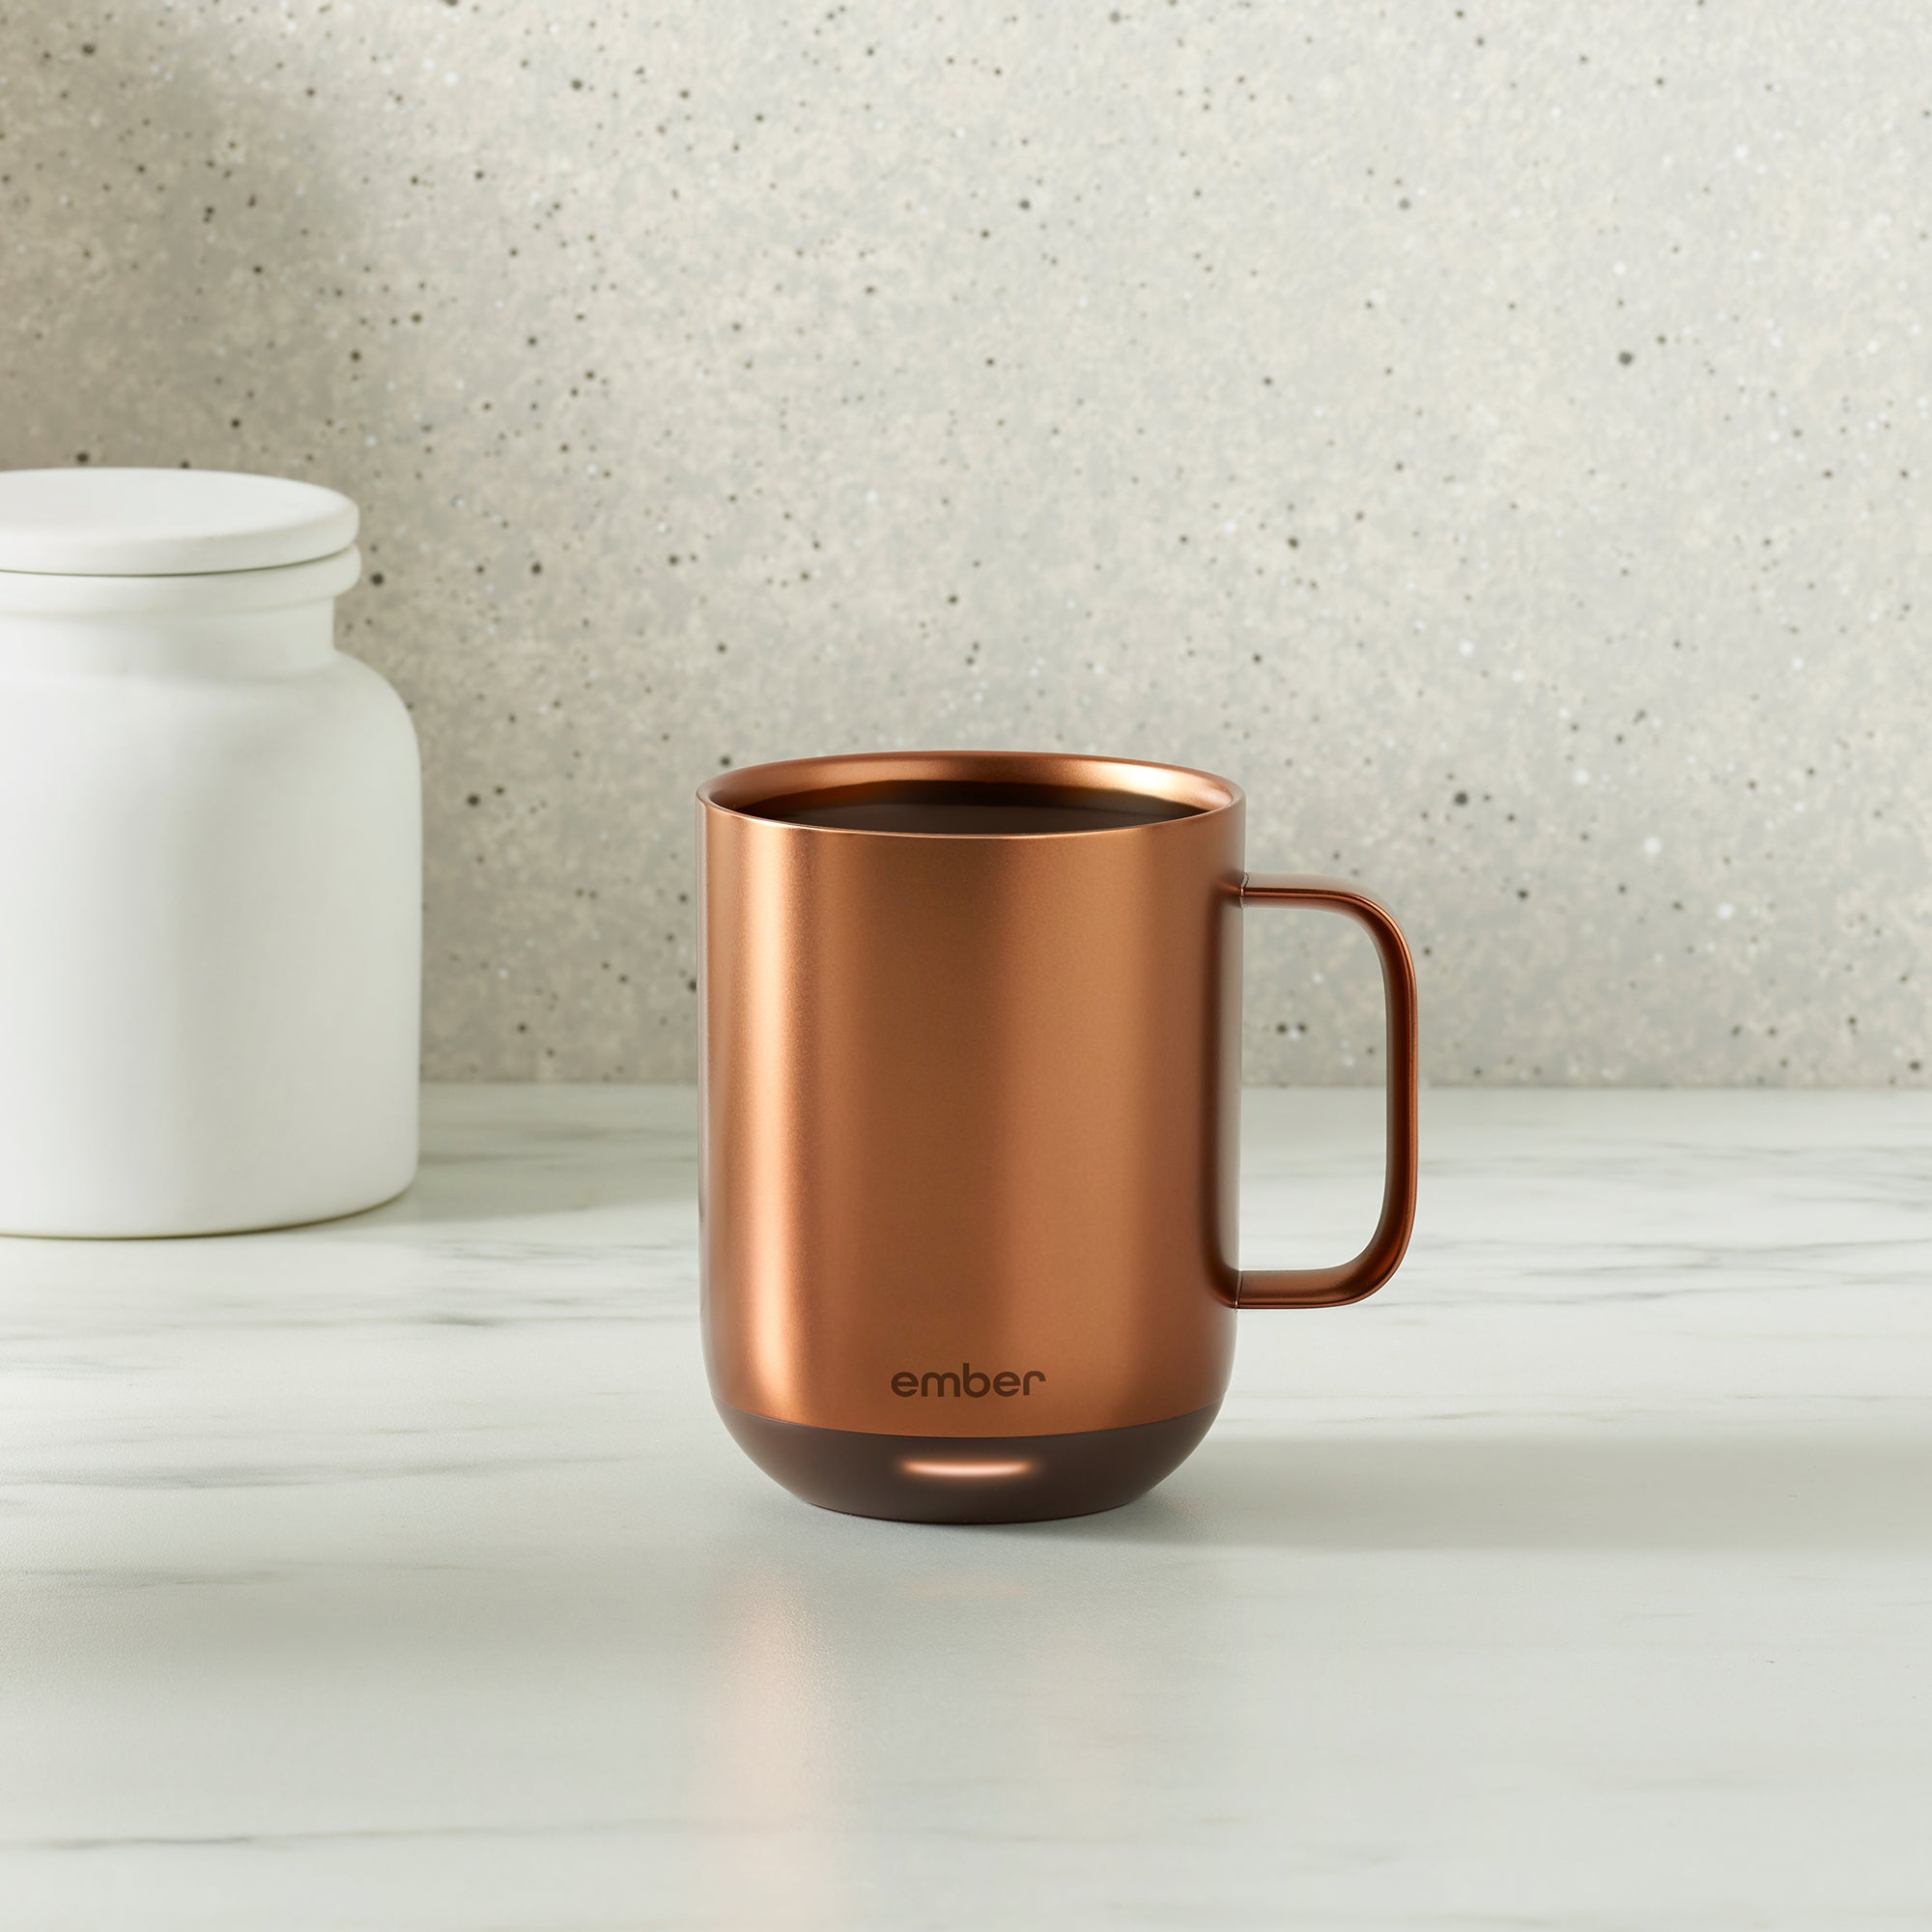 Ember - Temperature Control Smart Mug - 6 oz - Copper